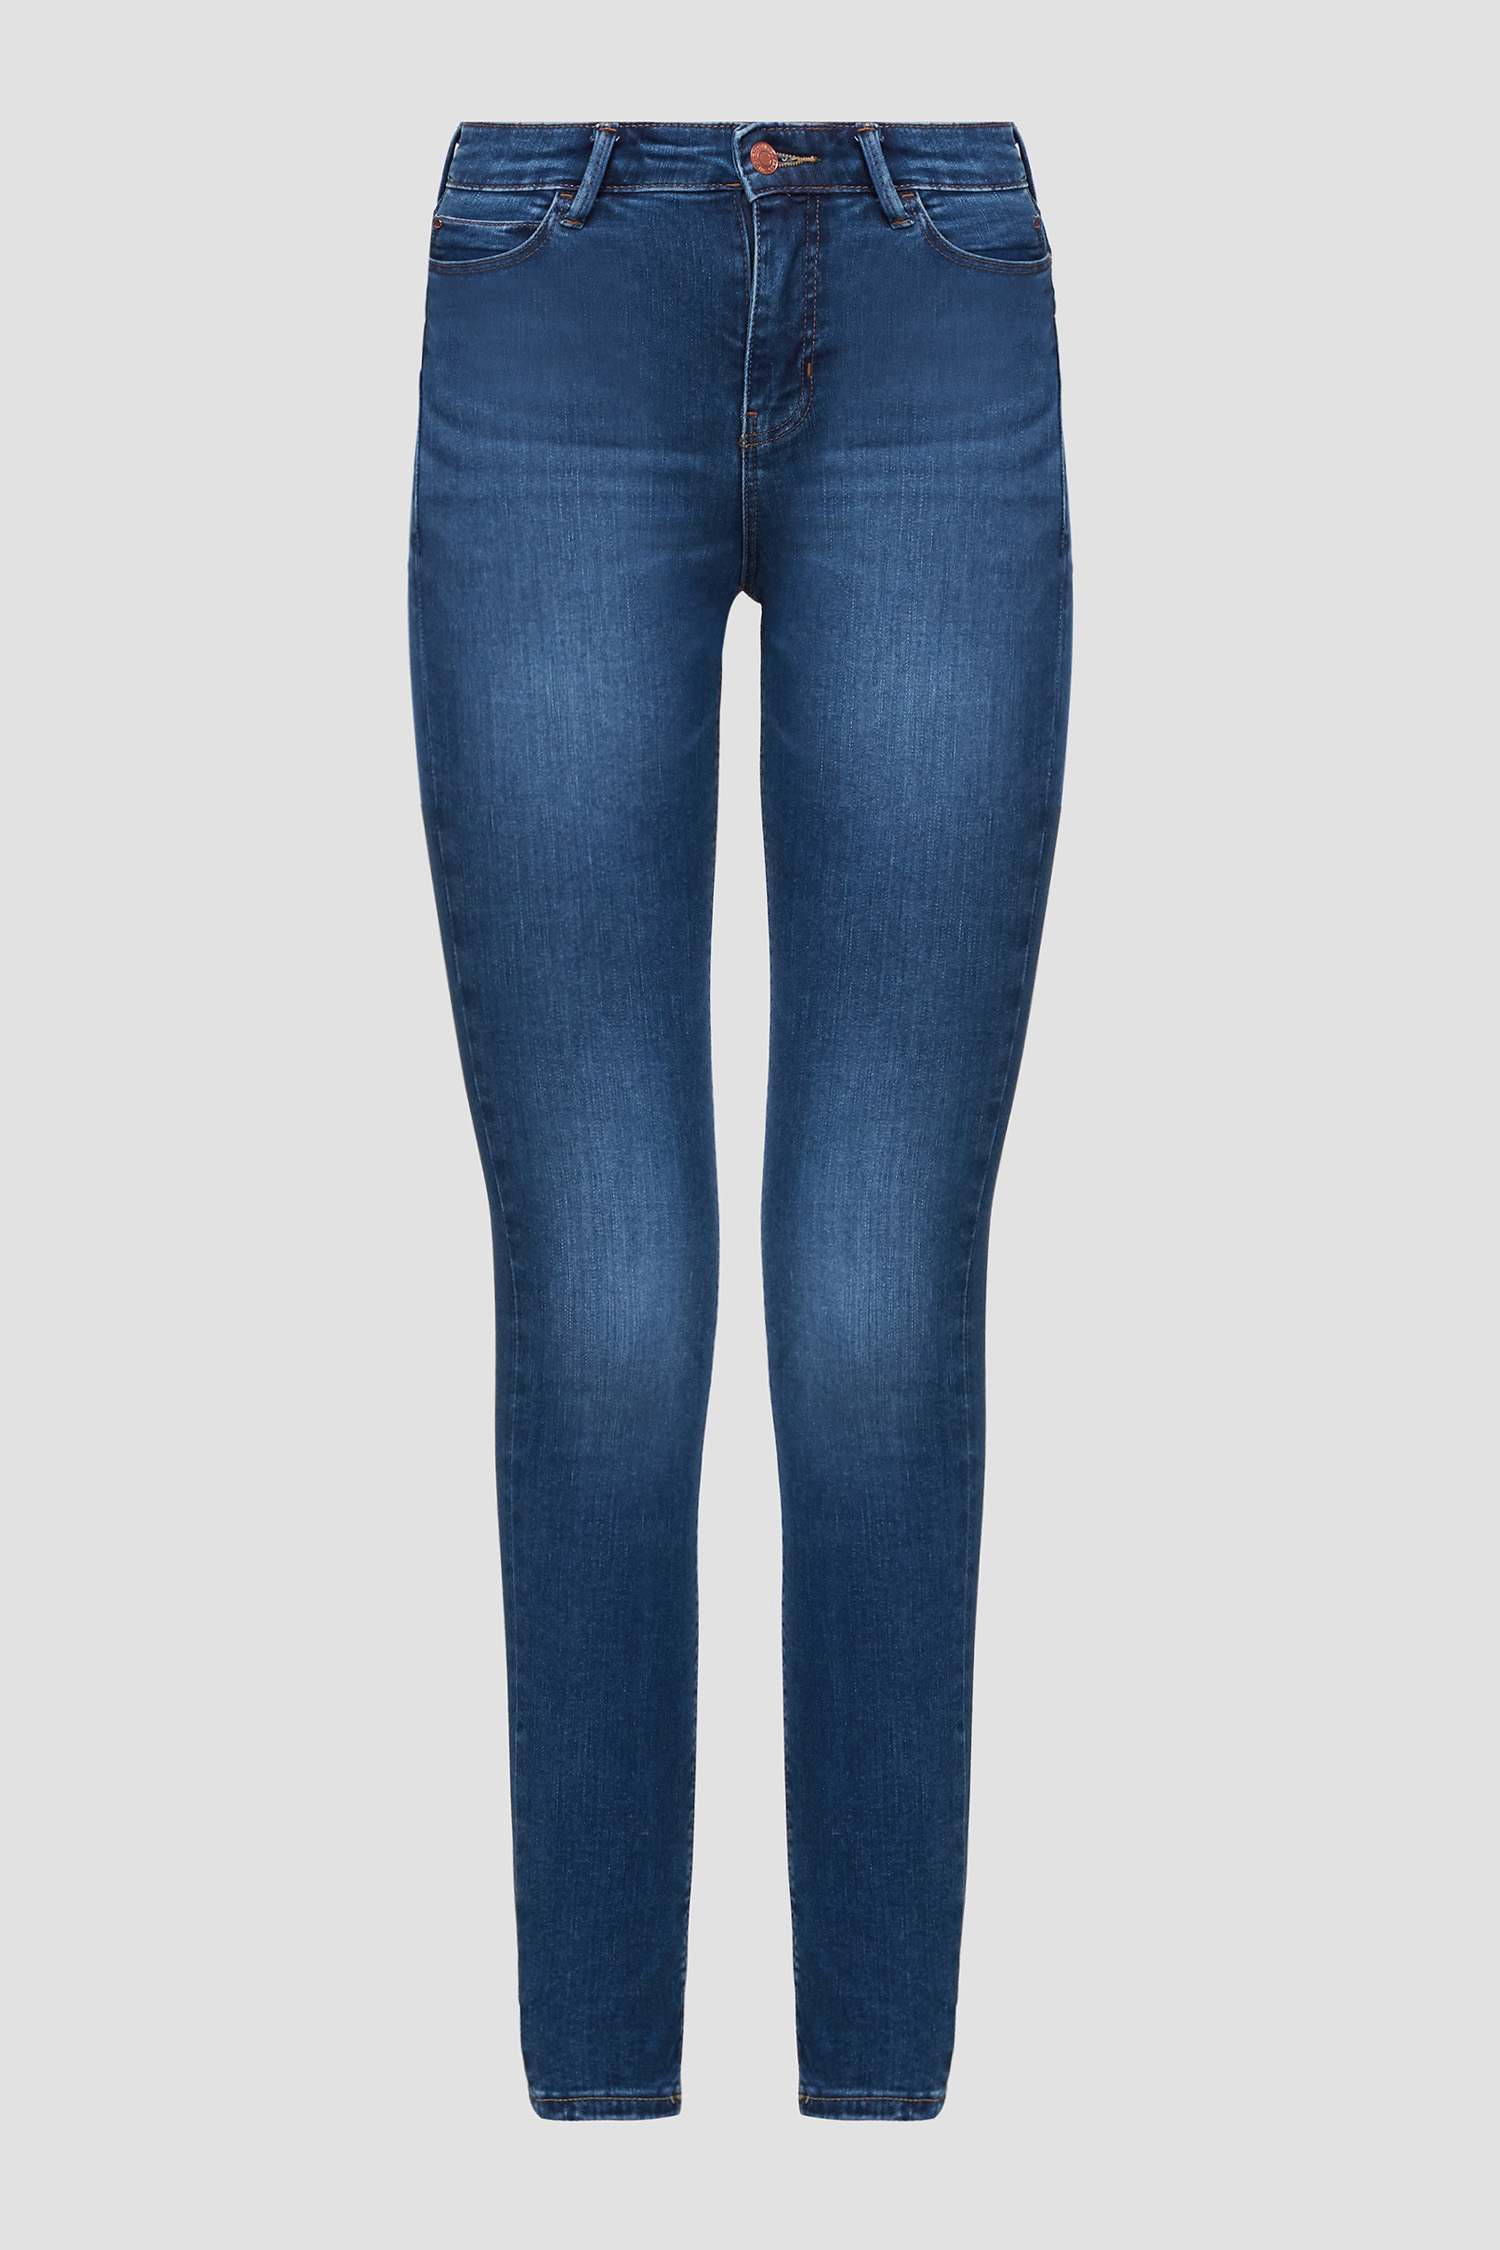 Синие джинсы High-Rise Skinny для девушек Guess W0YA46.D4484;SHEF